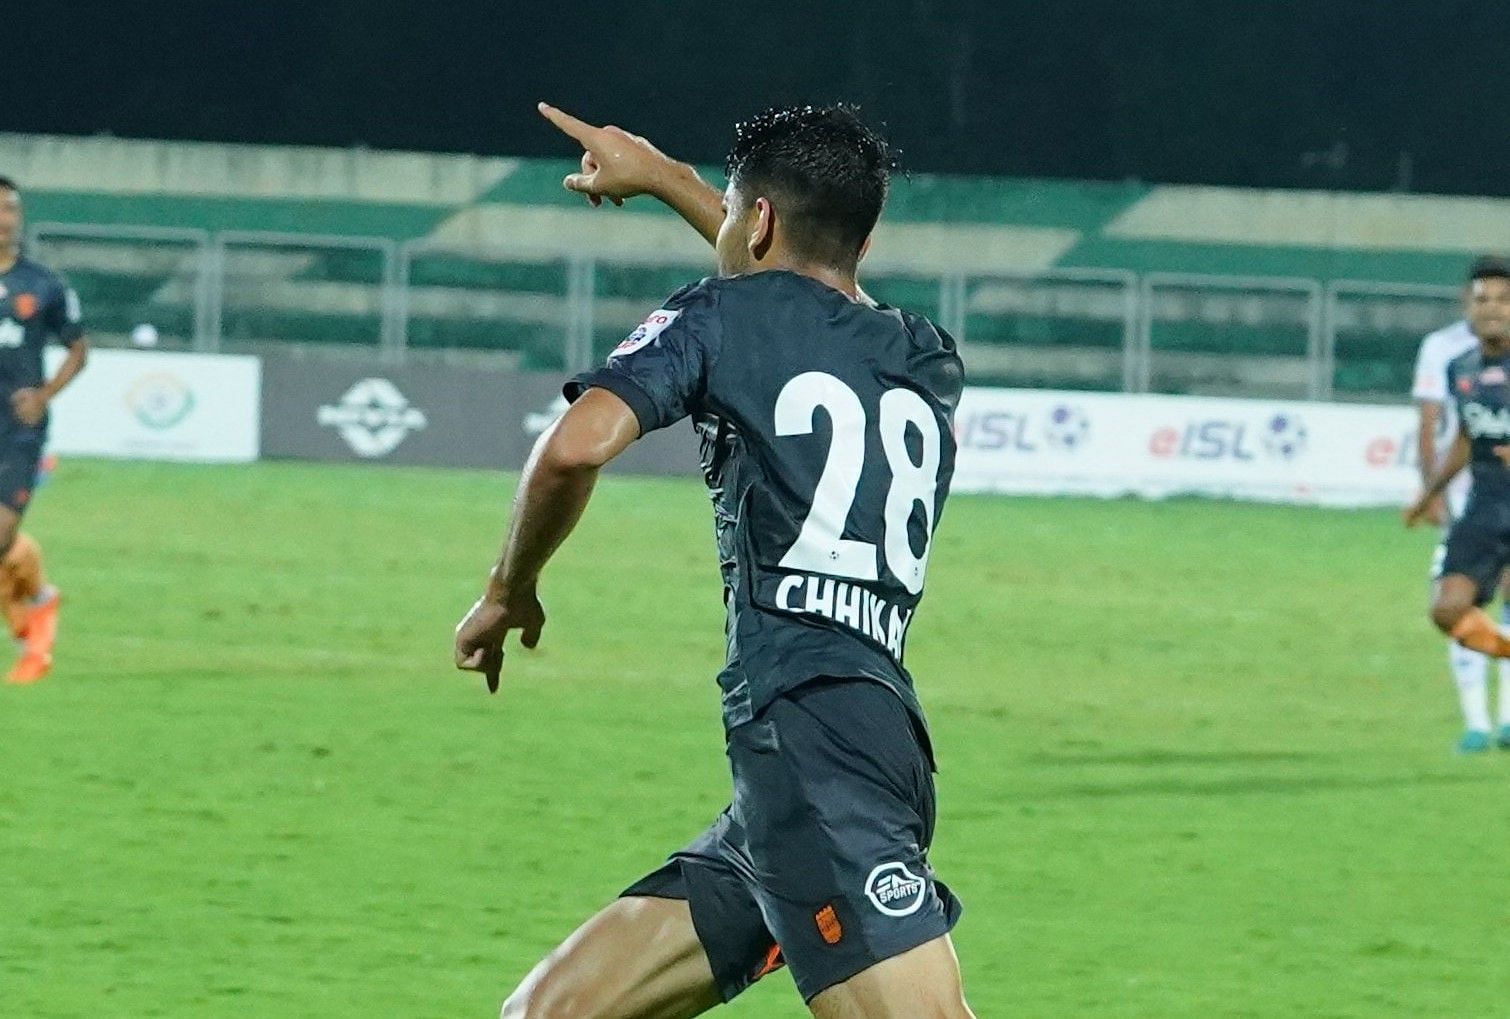 Ayush Chhikara scored the match winner for Mumbai City FC.